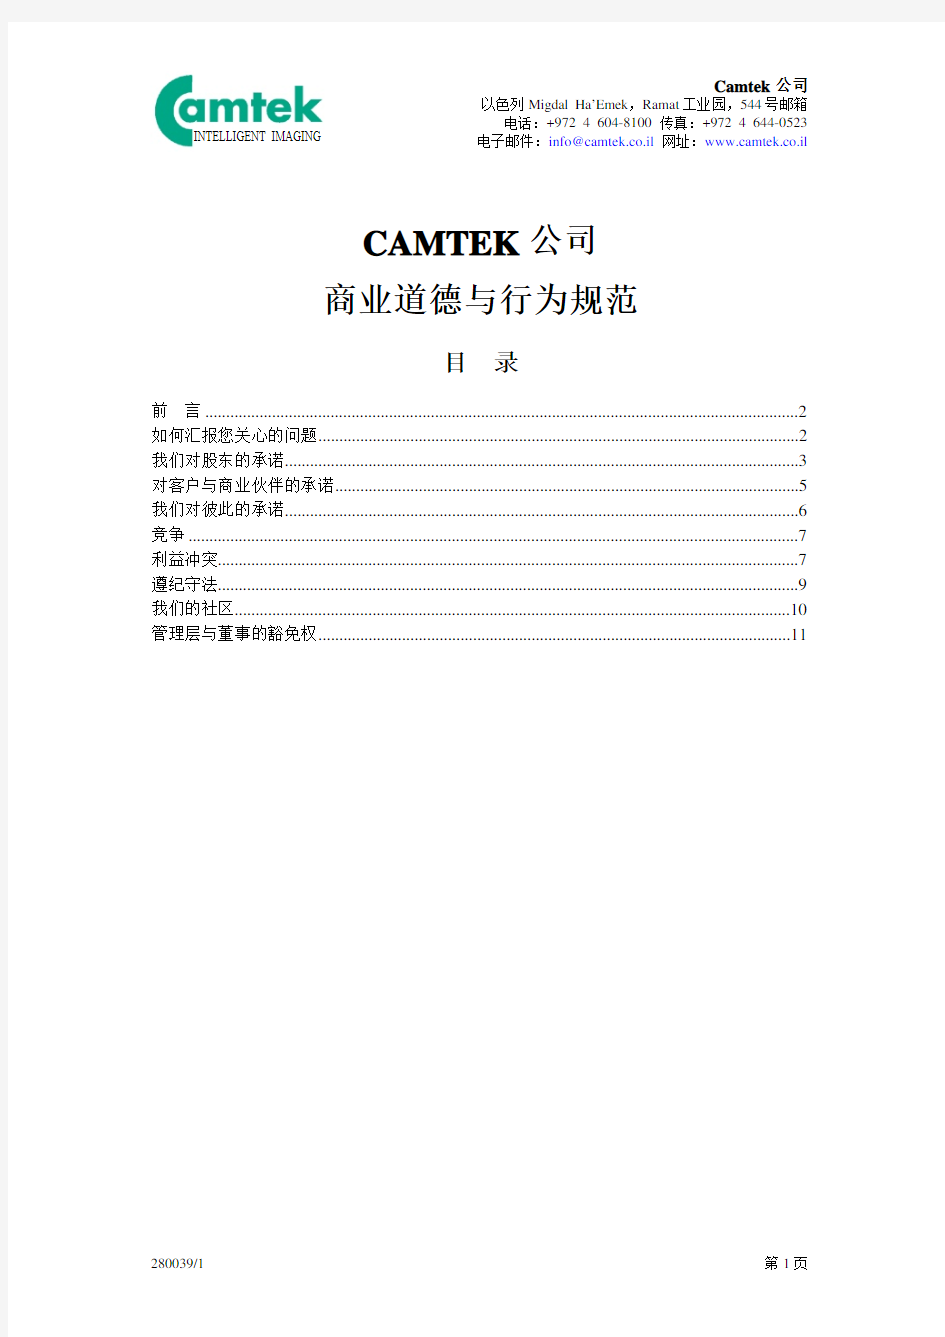 CAMTEK 公司 商业道德与行为规范